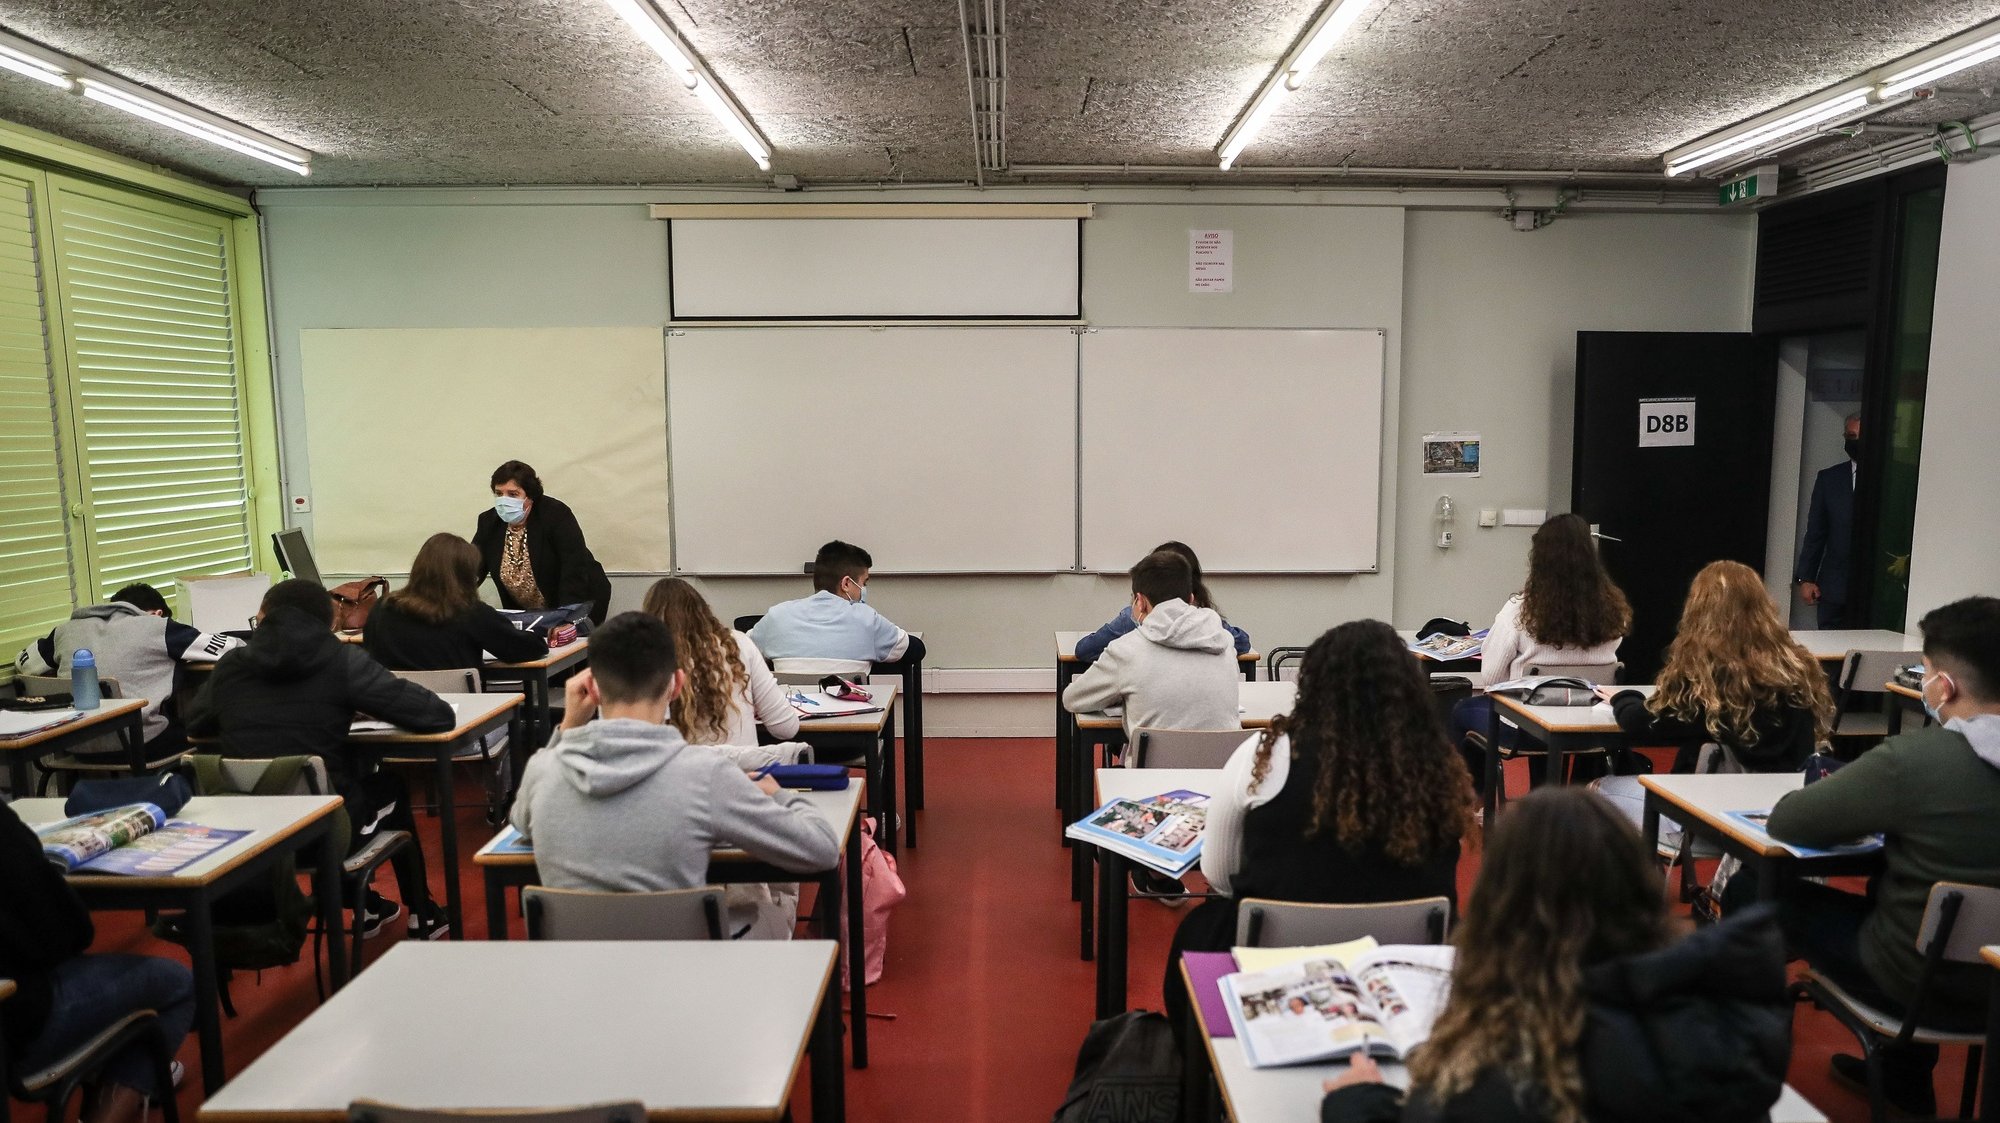 Alunos do agrupamento de escolas D. Dinis no regresso às aulas no âmbito do desconfinamento devido à pandemia de covid-19, em Lisboa, 5 de abril de 2021. MÁRIO CRUZ/LUSA